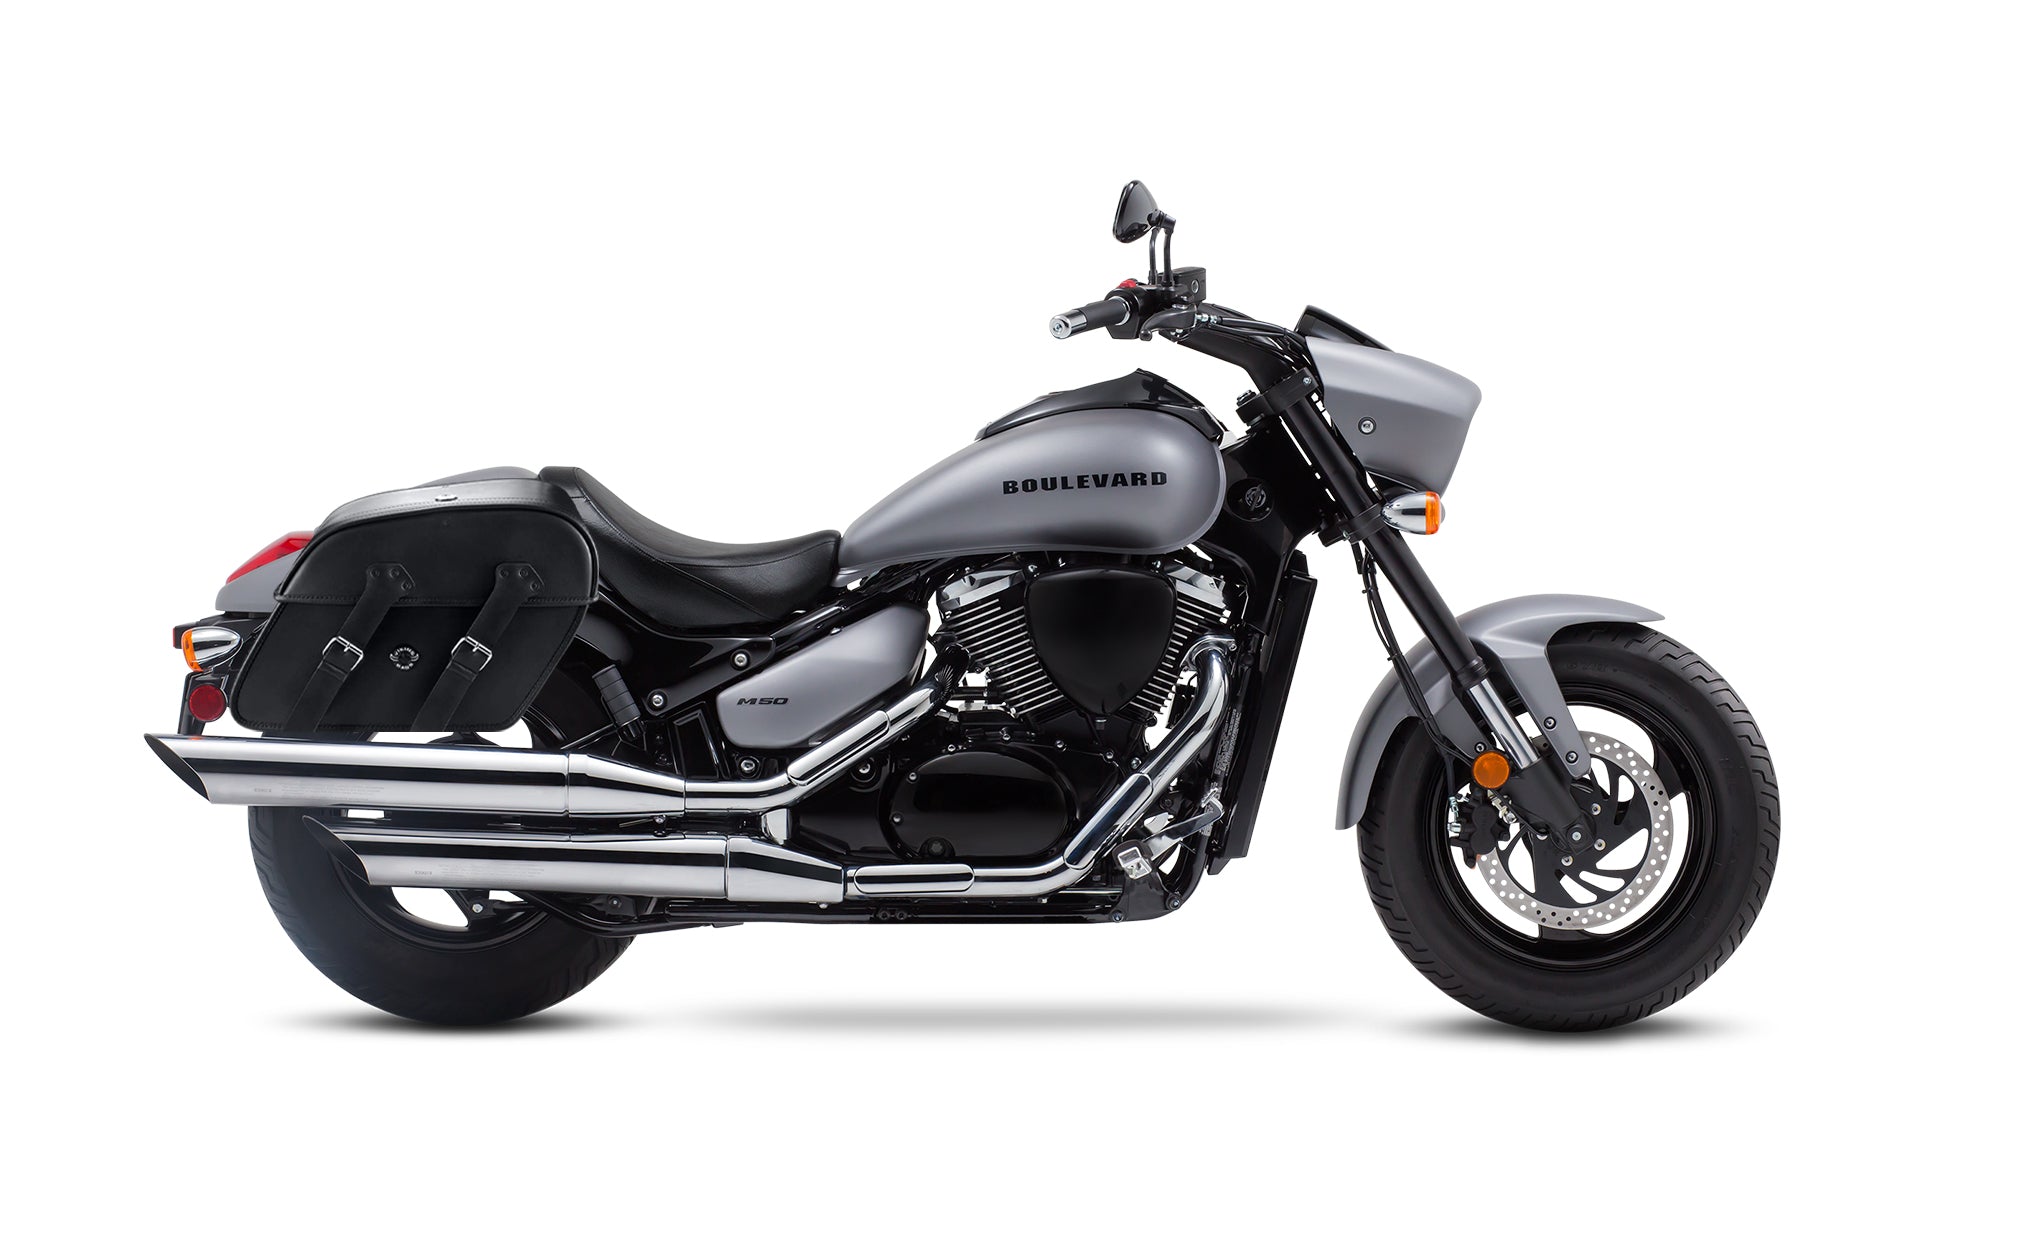 Viking Raven Large Suzuki Boulevard M50 Vz800 Motorcycle Leather Saddlebags on Bike Photo @expand